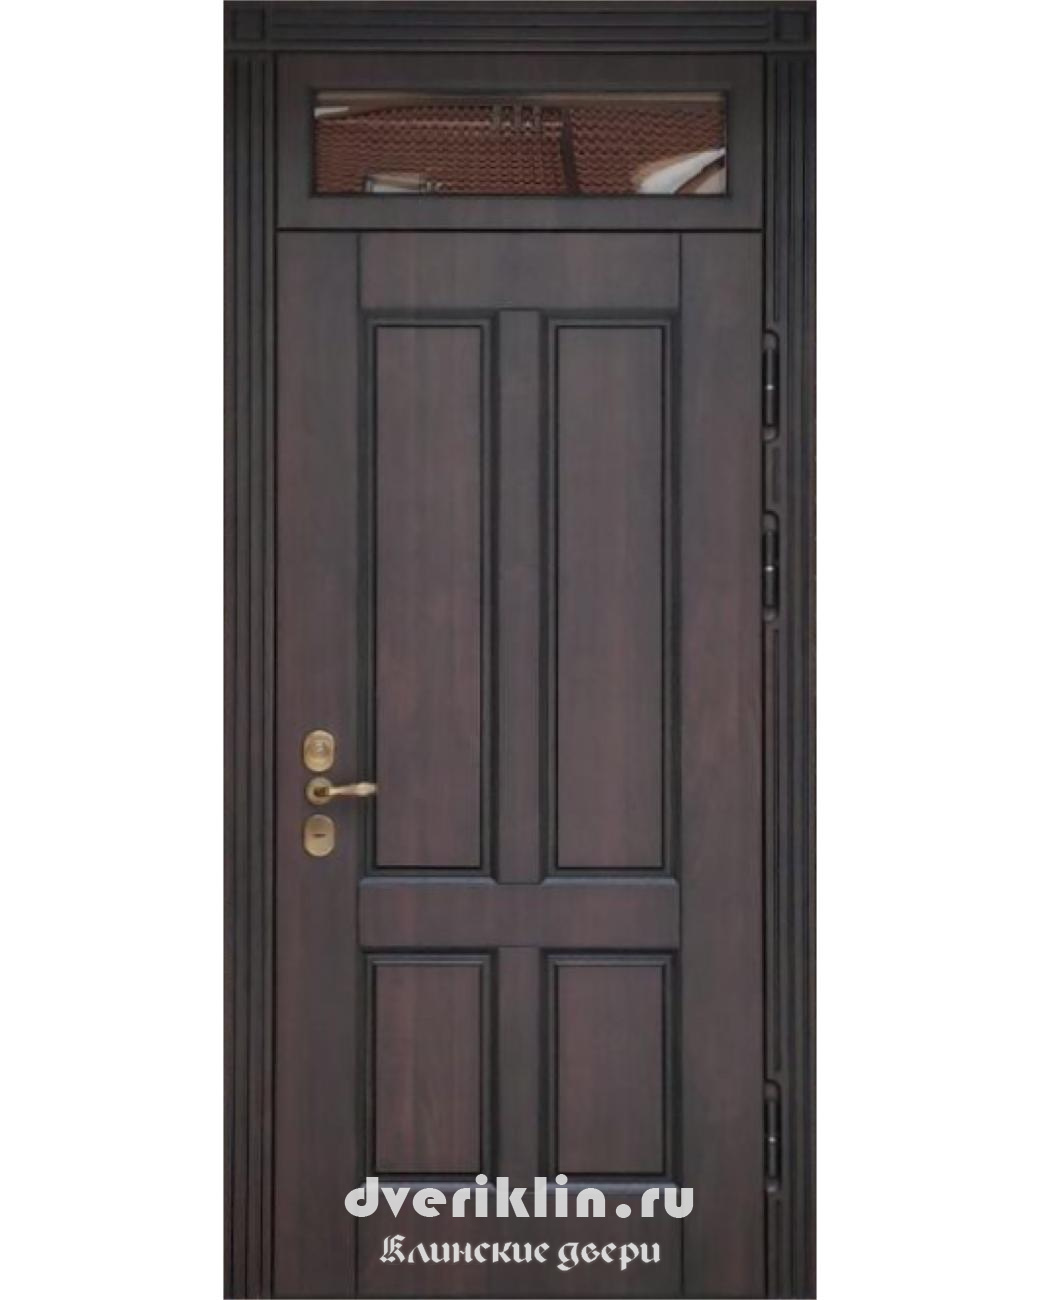 Дверь с верхней фрамугой DFR-06 (С фрамугой)